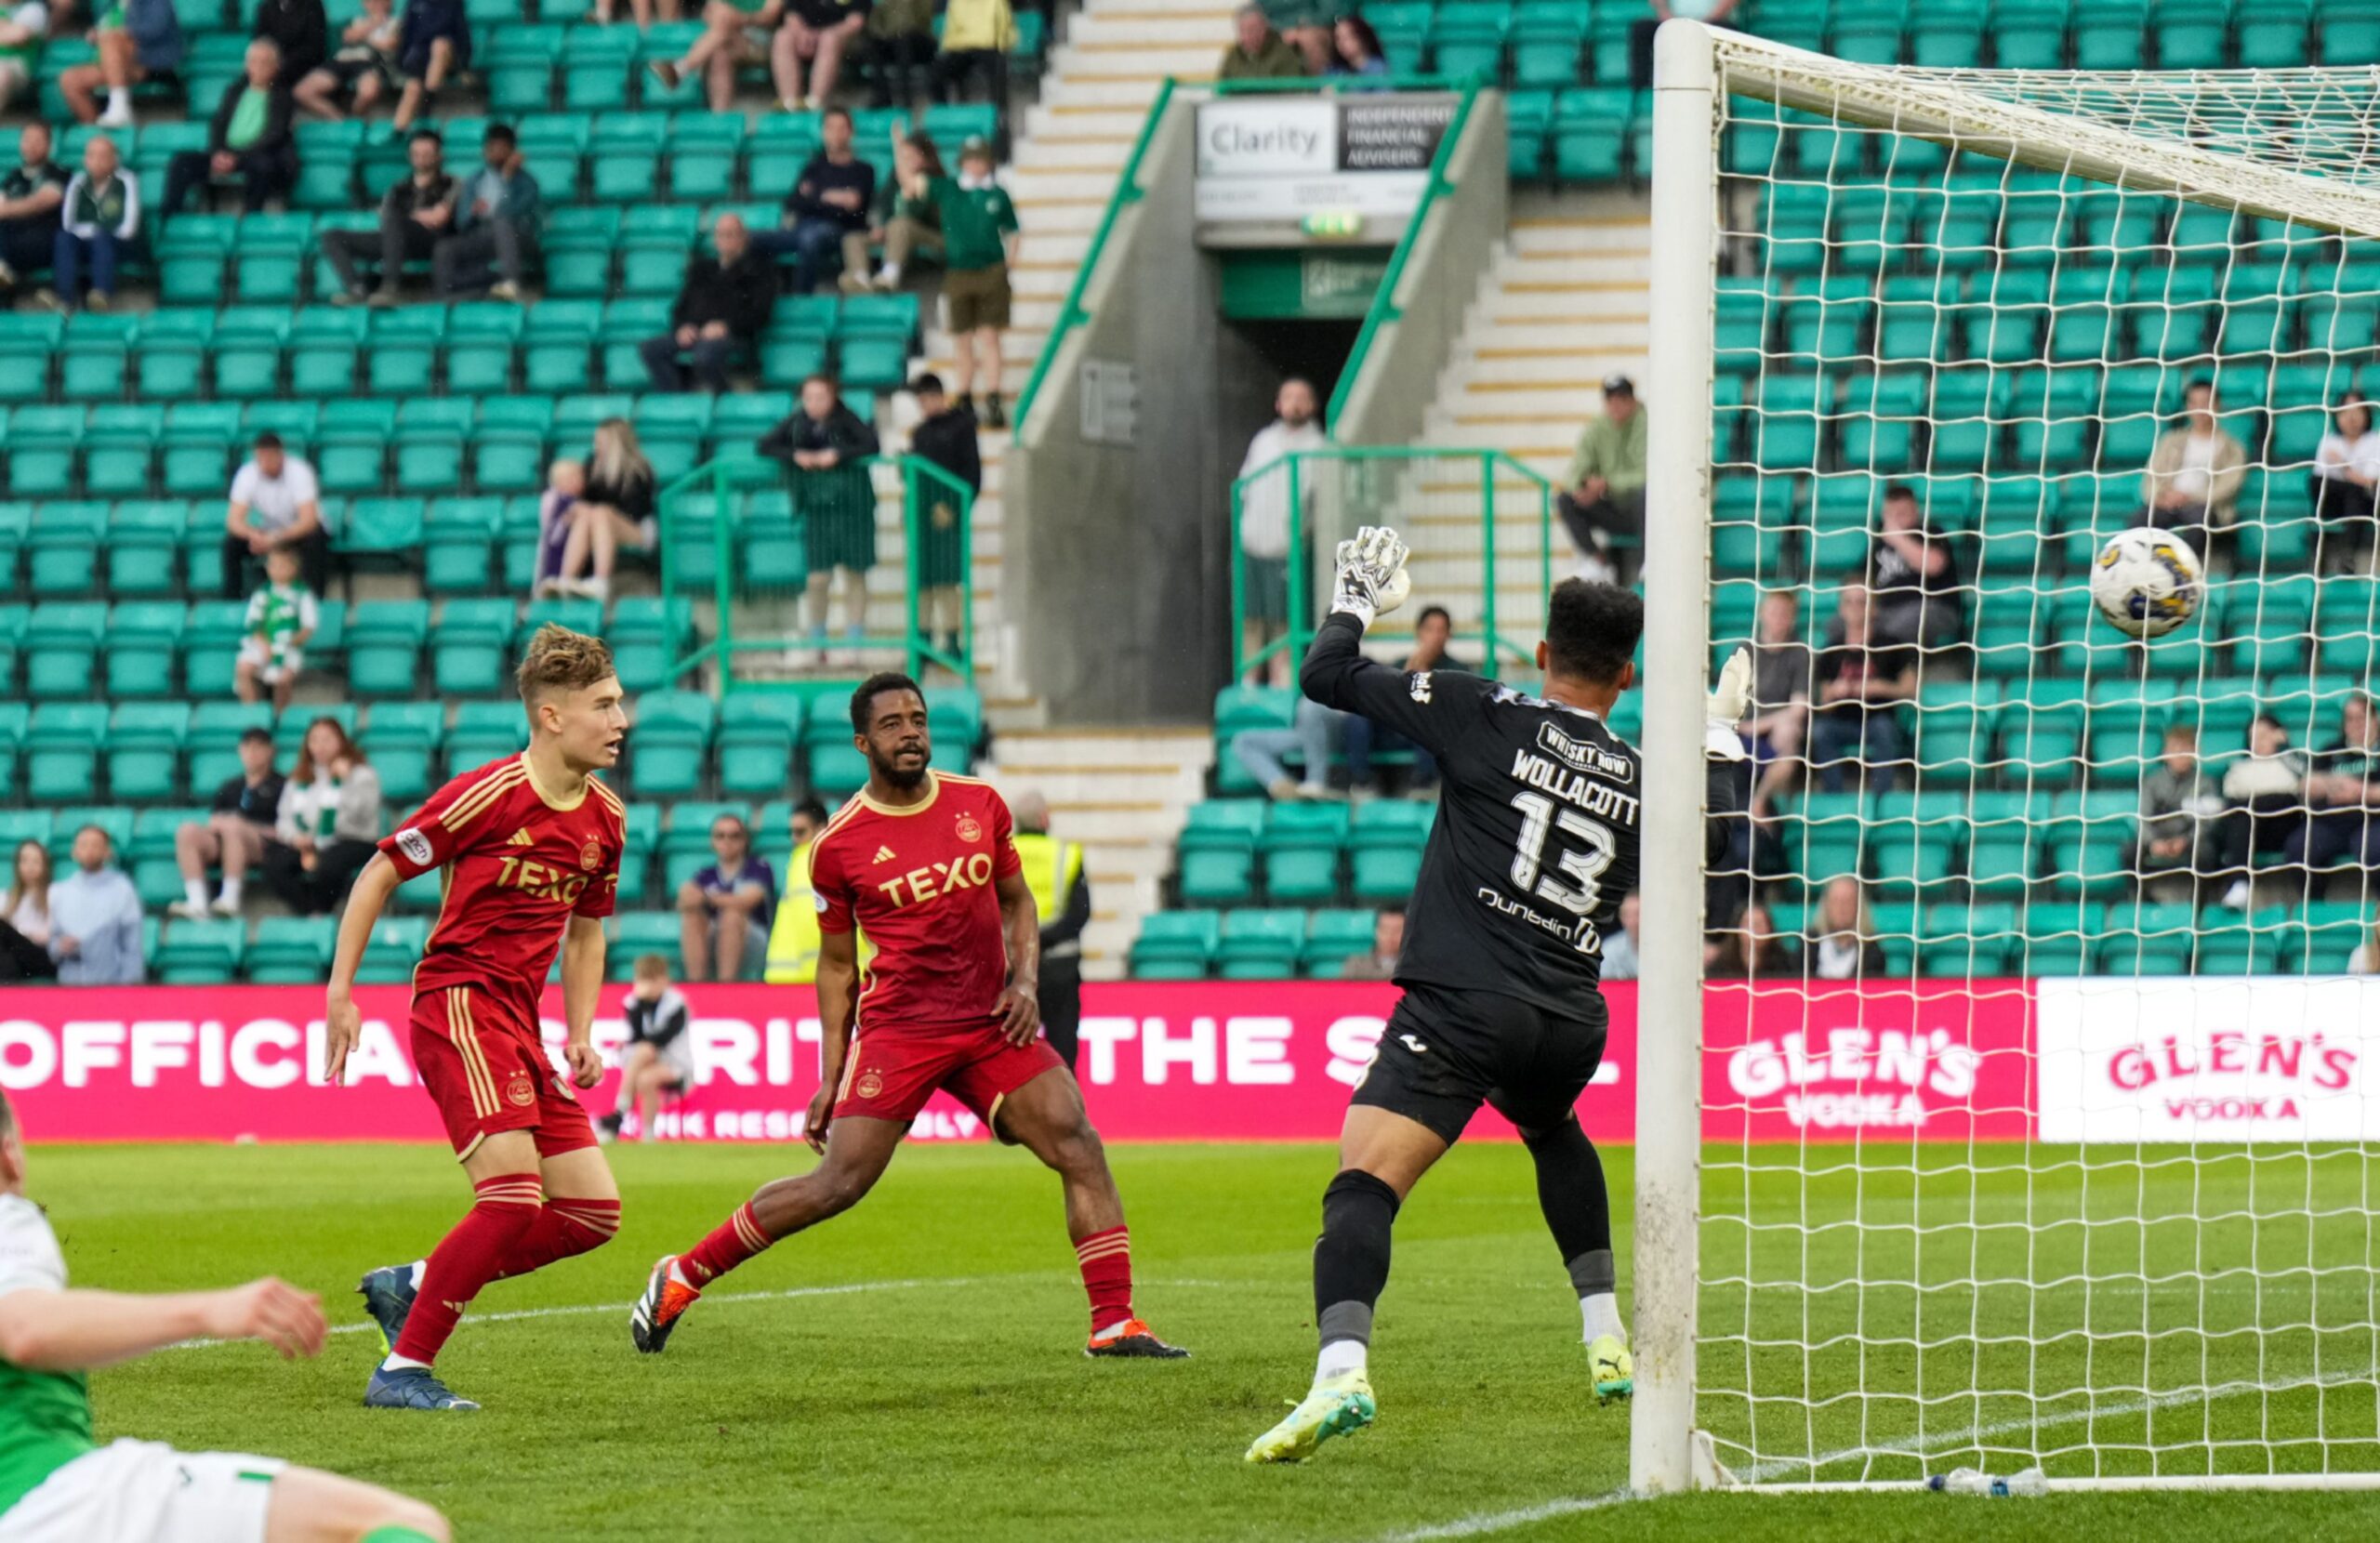 Fletcher Boyd of Aberdeen scores past Hibernian goalkeeper Jojo Wollacott on his first team debut. Image: Shutterstock 